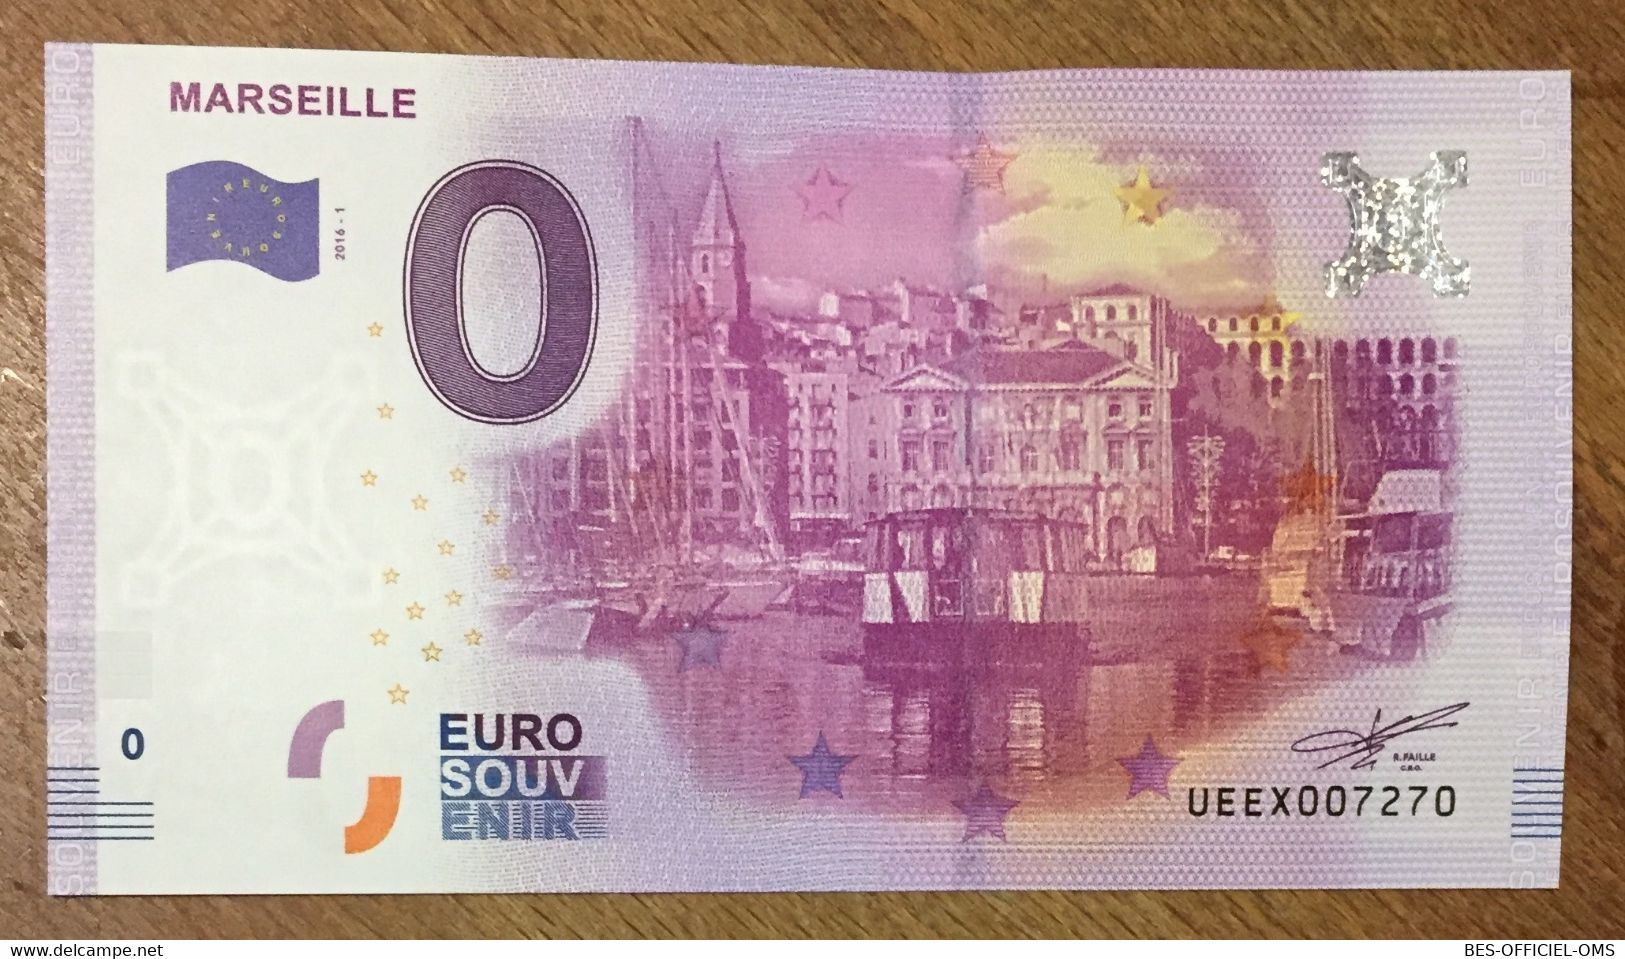 2016 BILLET 0 EURO SOUVENIR DPT 13 MARSEILLE ZERO 0 EURO SCHEIN BANKNOTE PAPER MONEY BANK FERRY BOAT - Essais Privés / Non-officiels